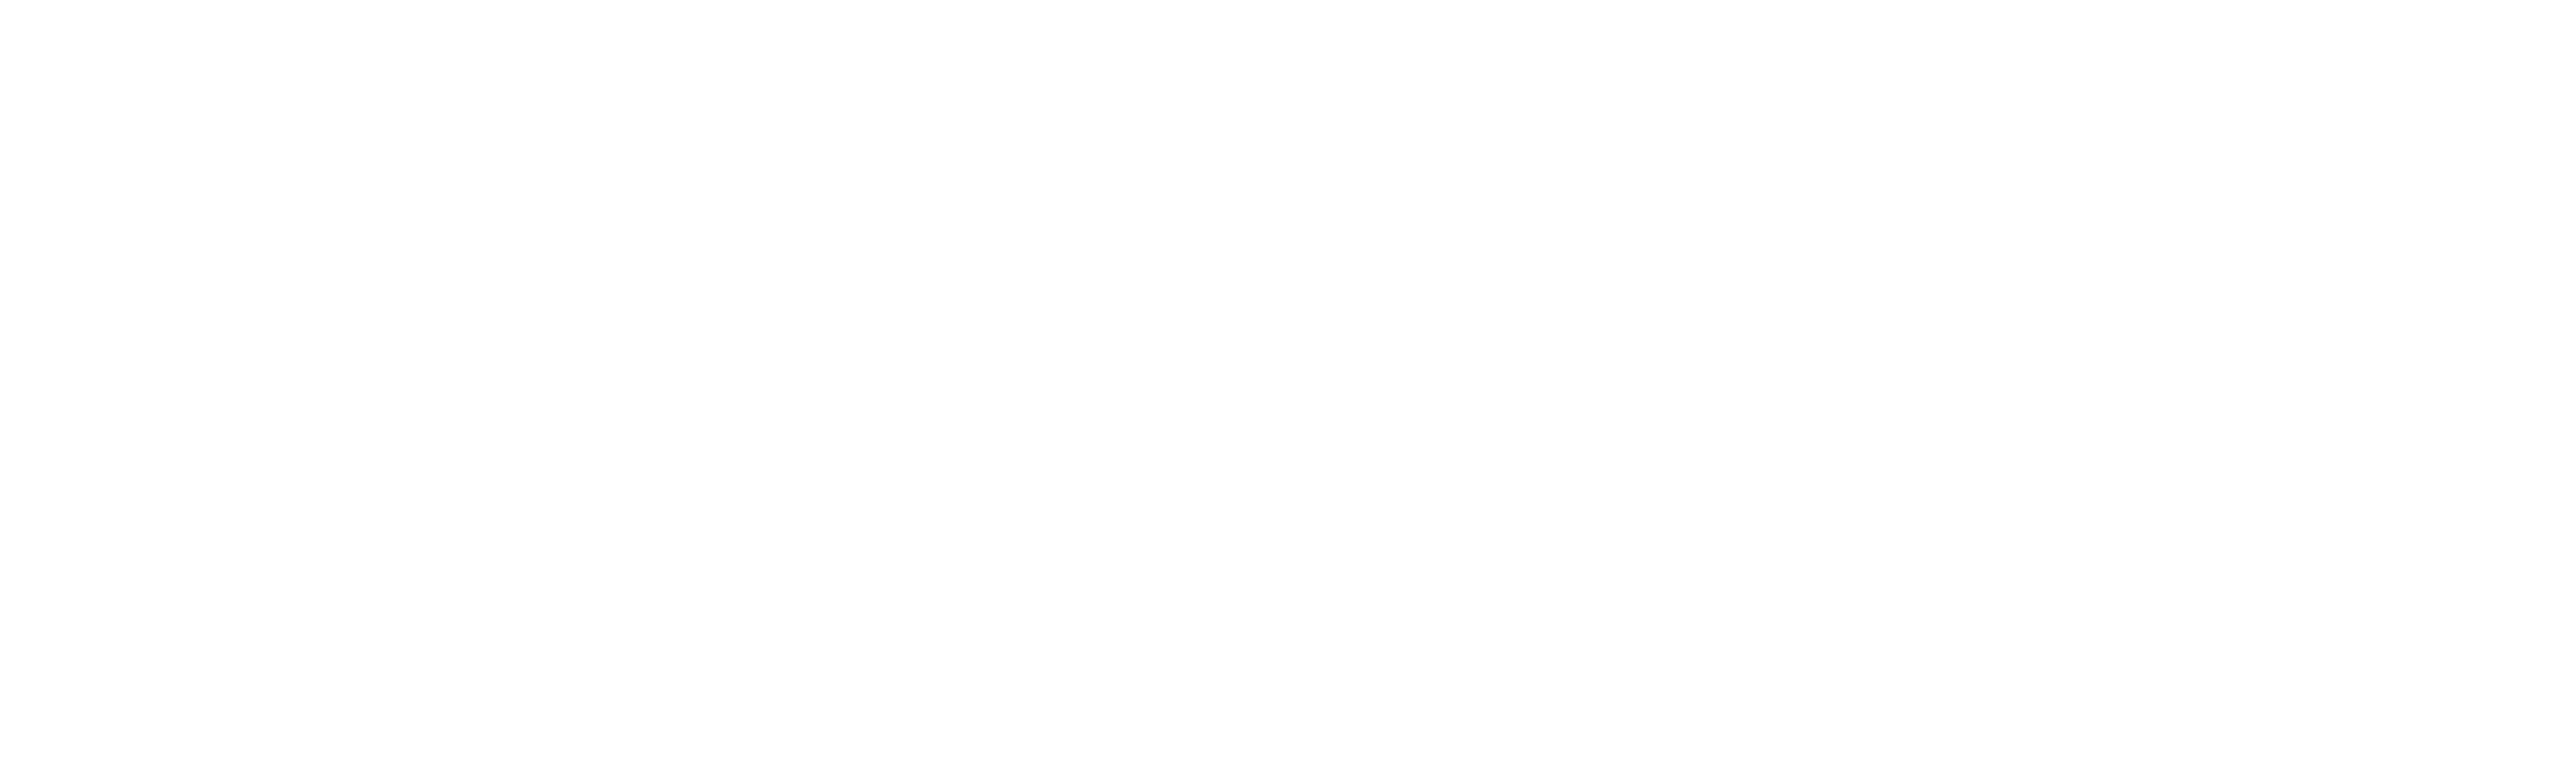 Sanitär Schneider München-Trudering, Sanitärbetrieb München, Minibaggerarbeiten München, Sanitär München, Heizung München, Wärmepumpe München, Erneuerbare Energien München